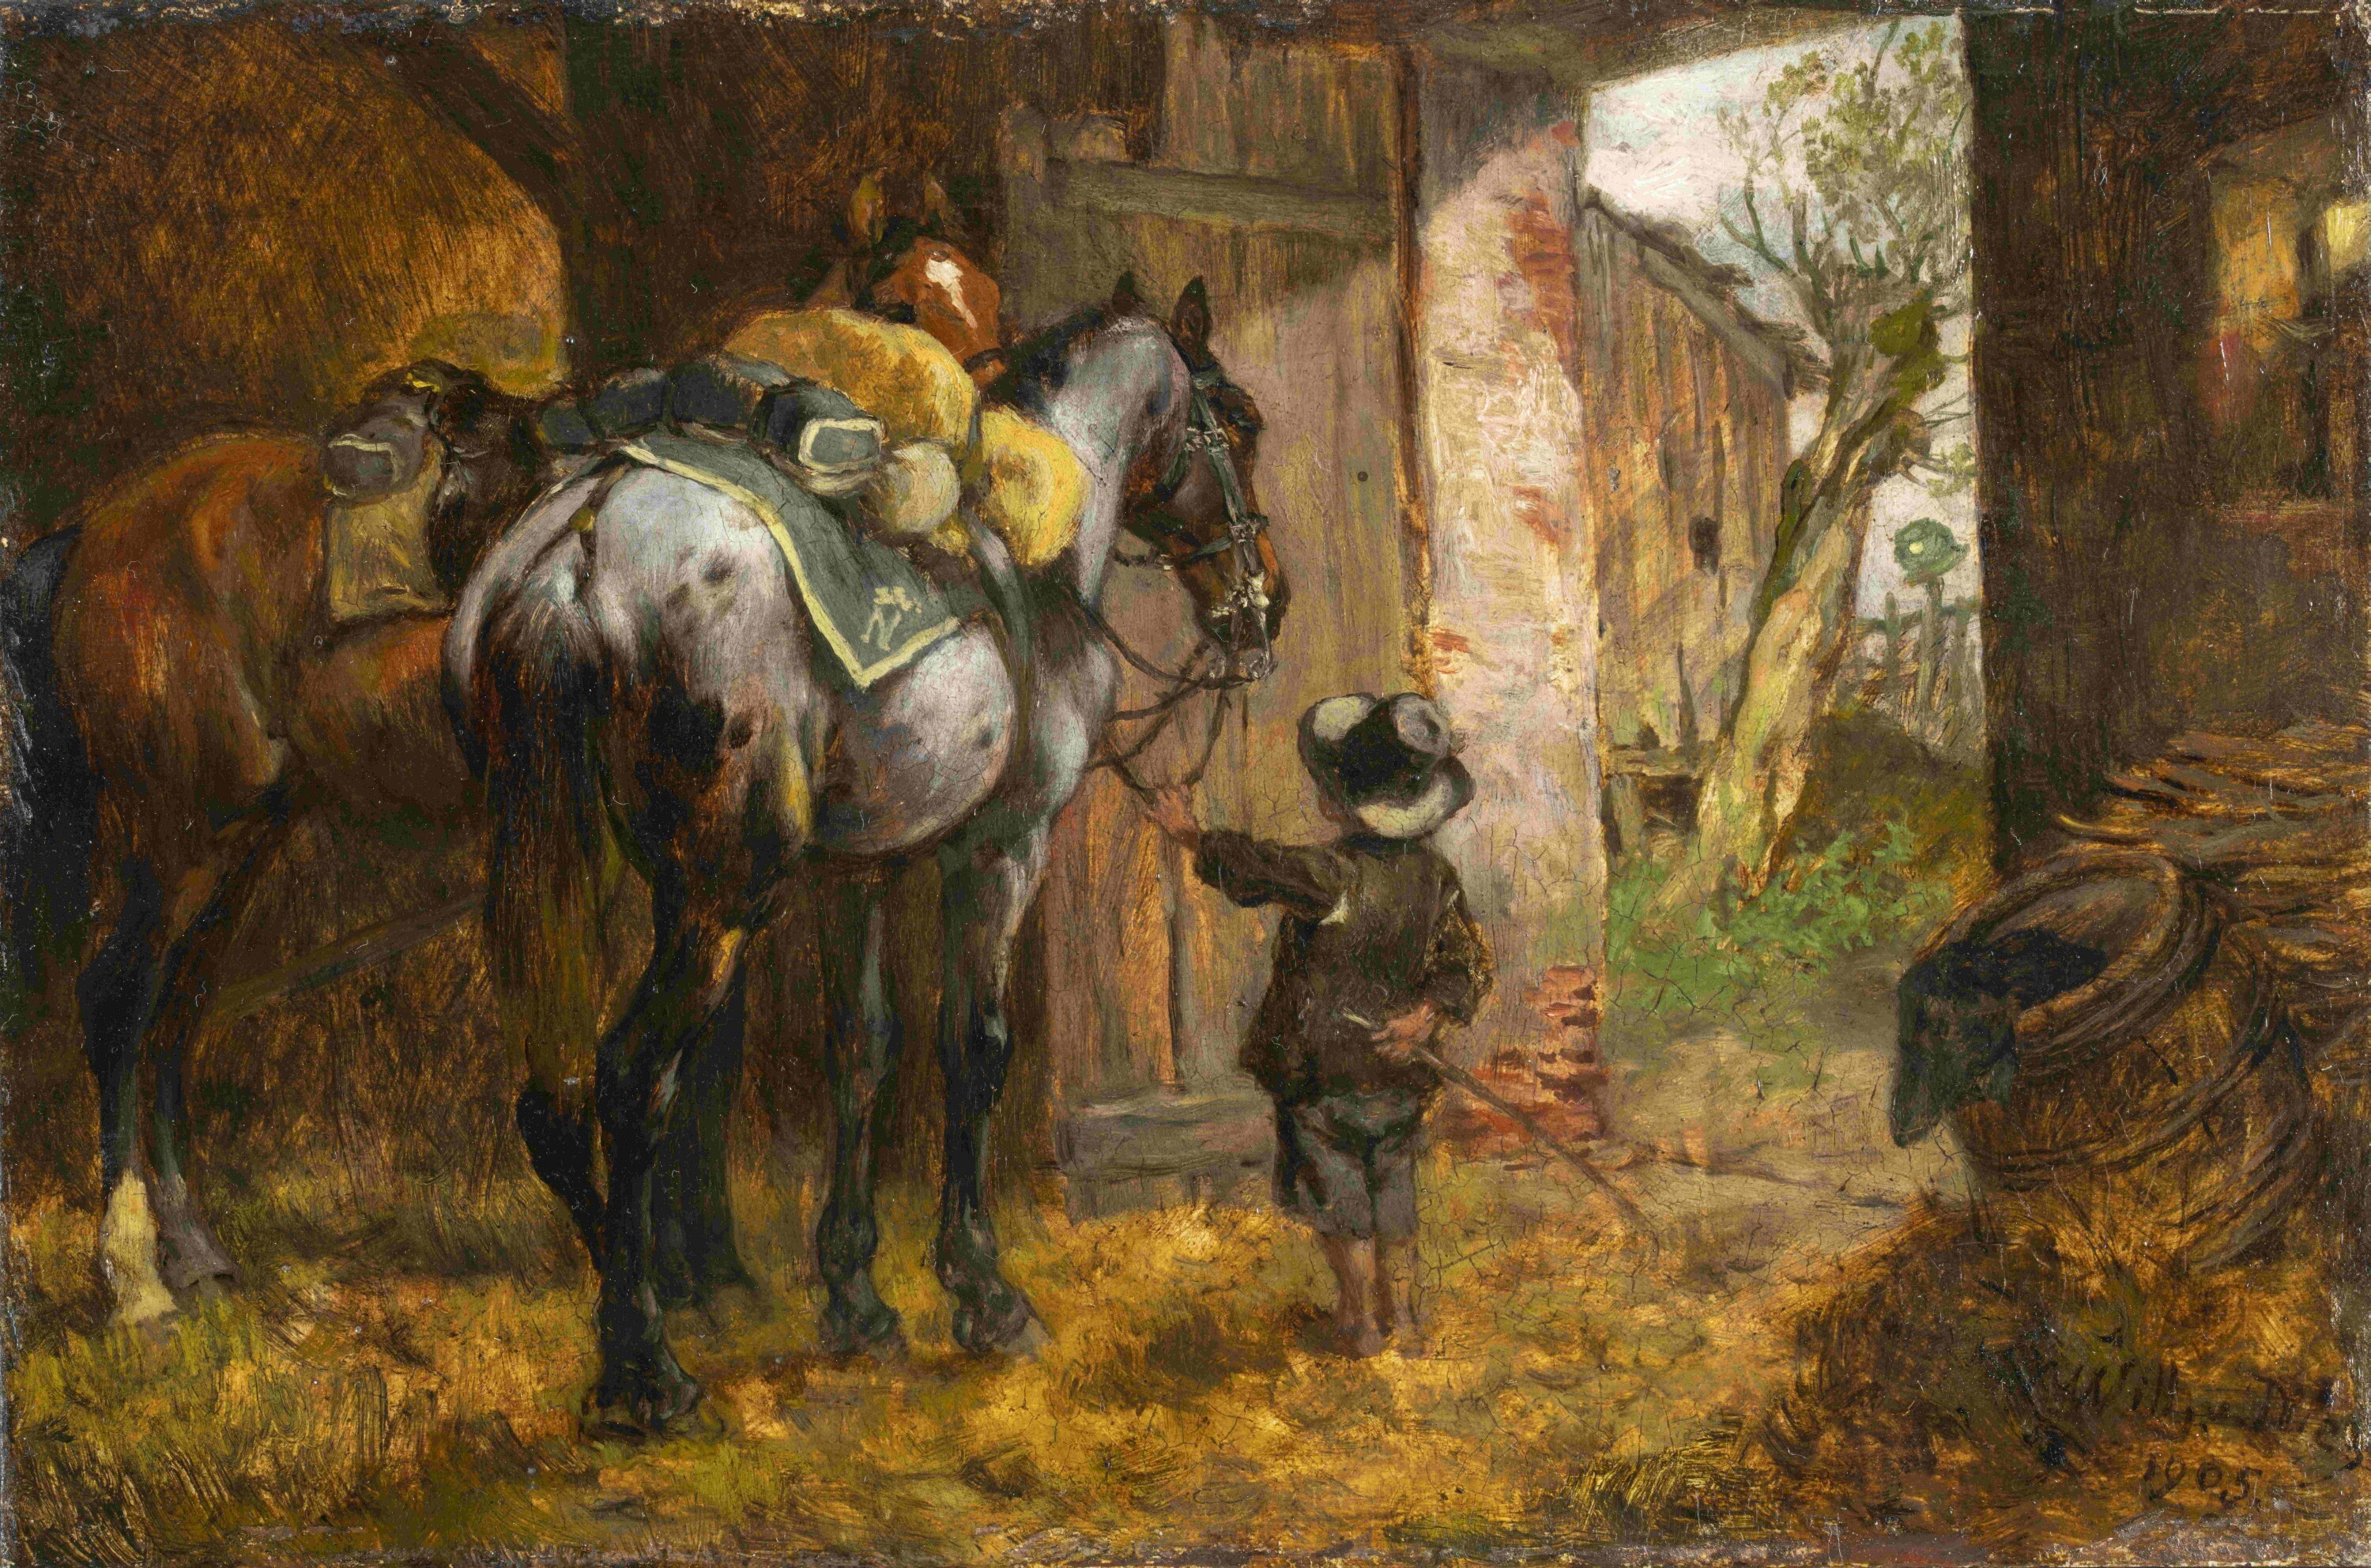 Junge mit Pferden (Kunstsammlungen Chemnitz, Inv.-Nr. 147 CC BY-NC-ND)